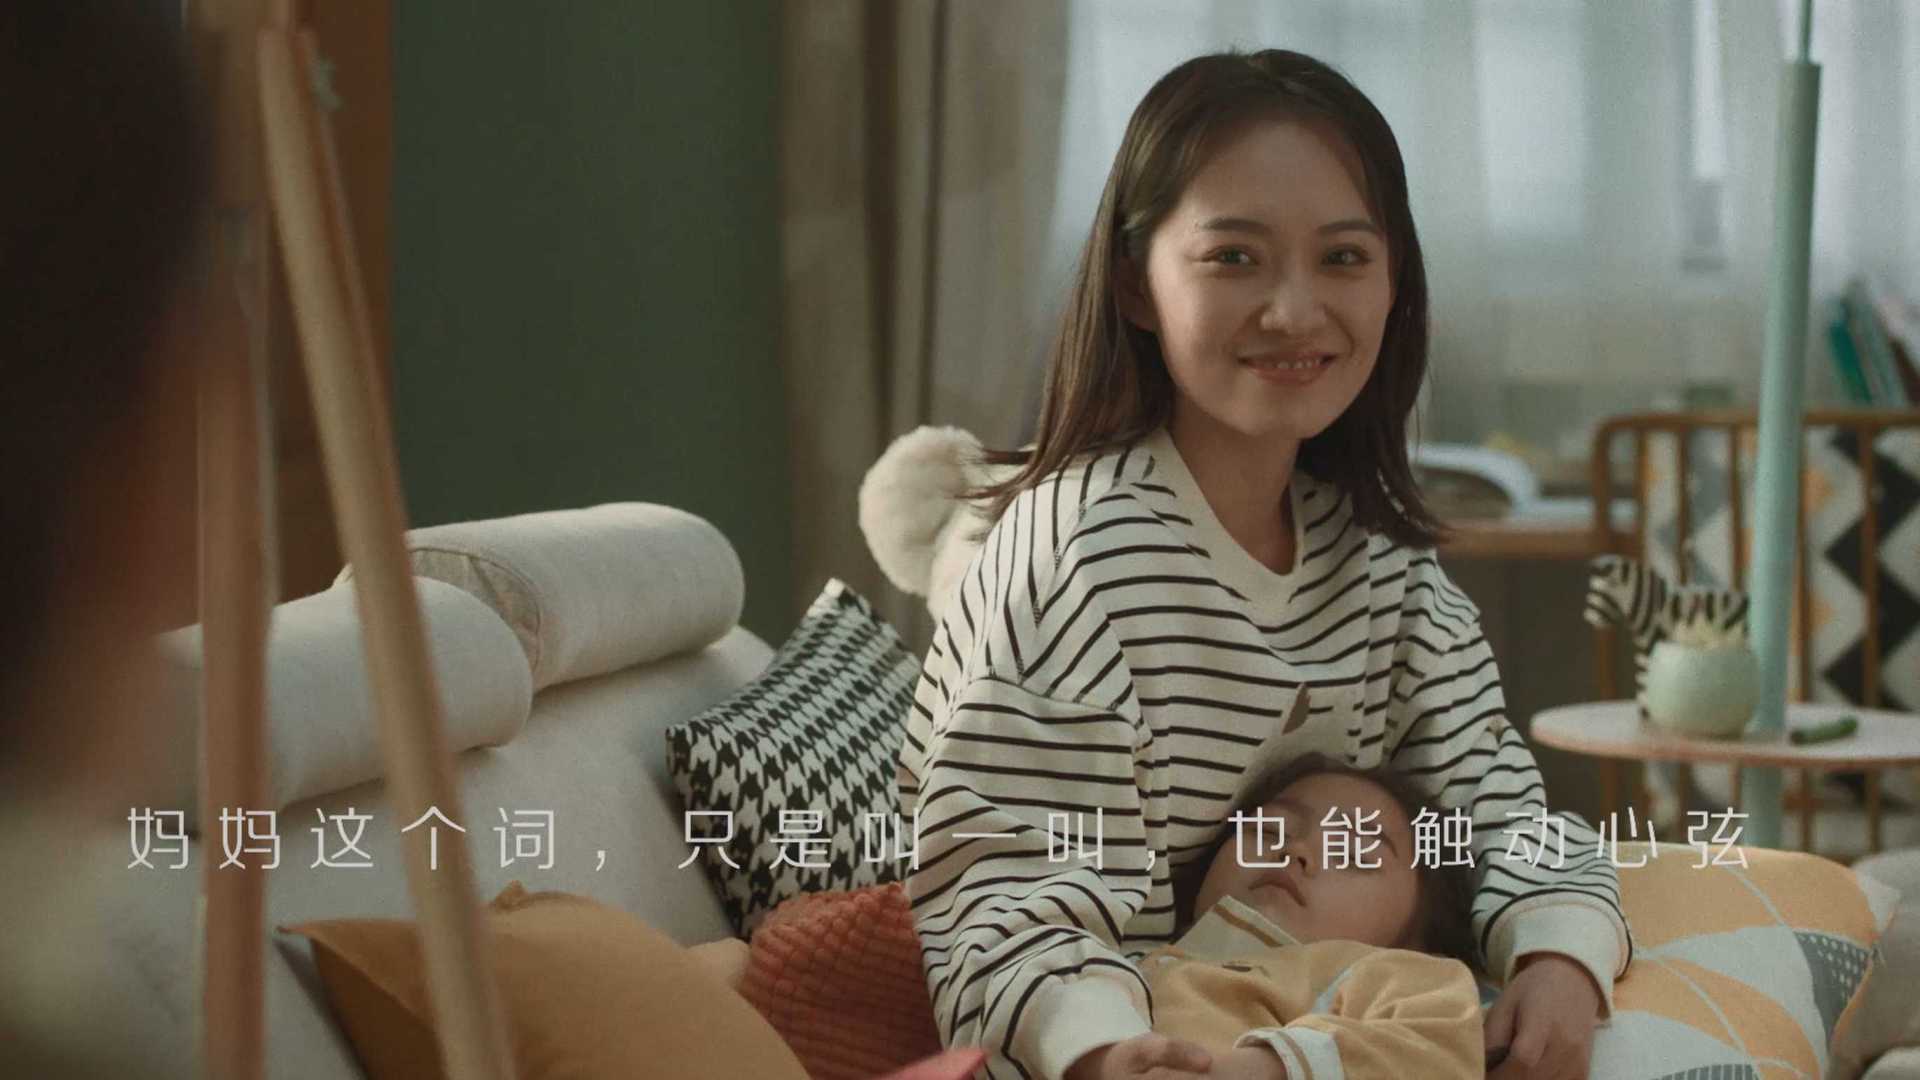 中国移动 | 母亲节短片《当她成为妈妈》